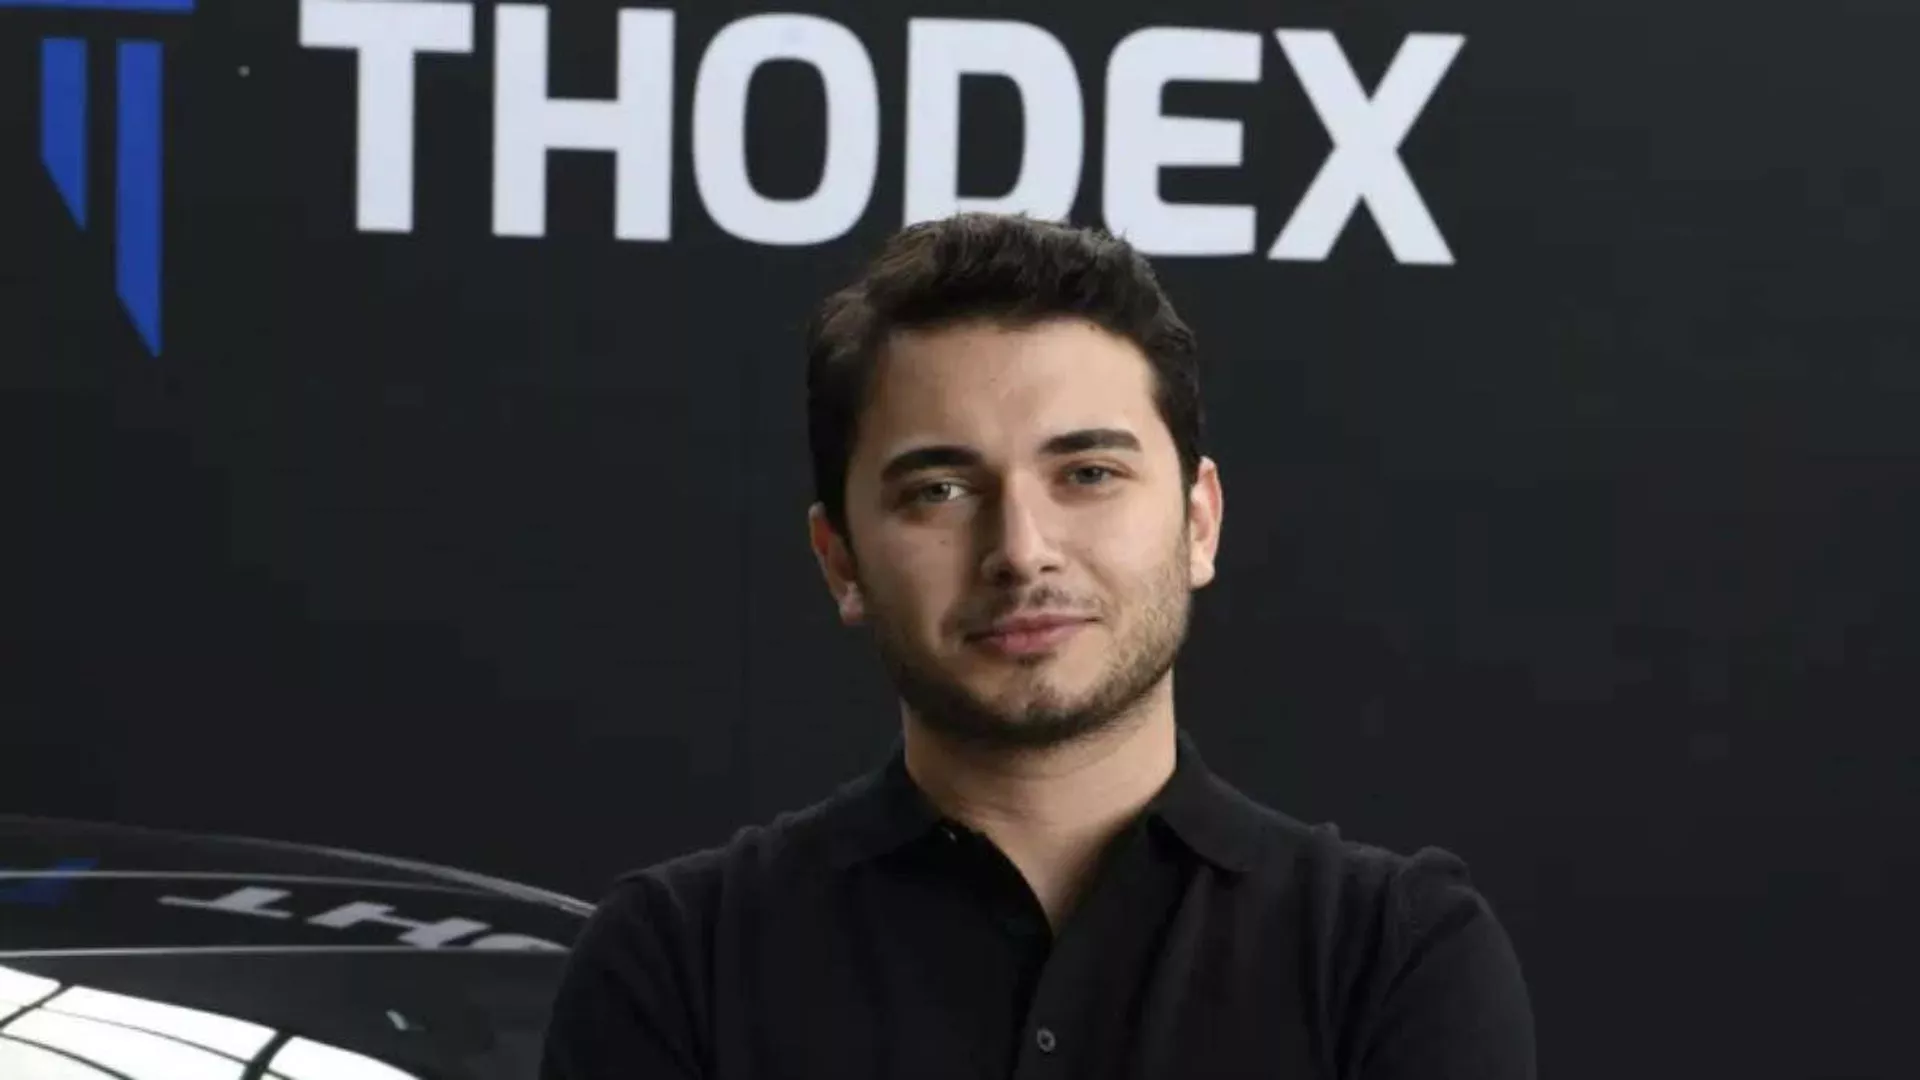 Thodex'in kurucusu Fatih Özer Arnavutluk'ta yakalandı: Türkiye’ye iade işlemleri başladı